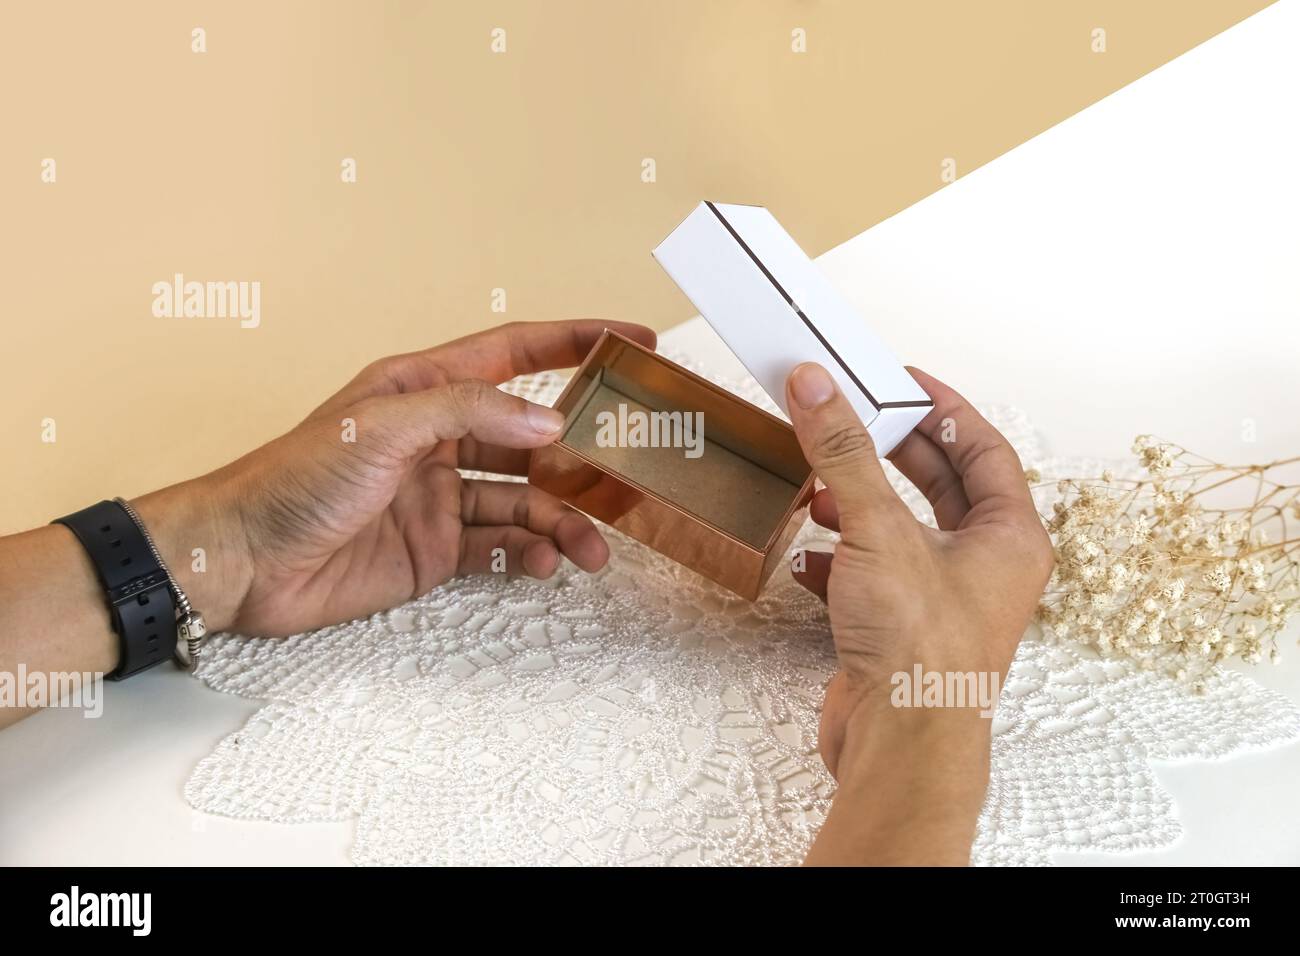 Mani maschili che aprono una elegante confezione regalo vuota. Mockup presenta una confezione regalo su sfondo chiaro Foto Stock